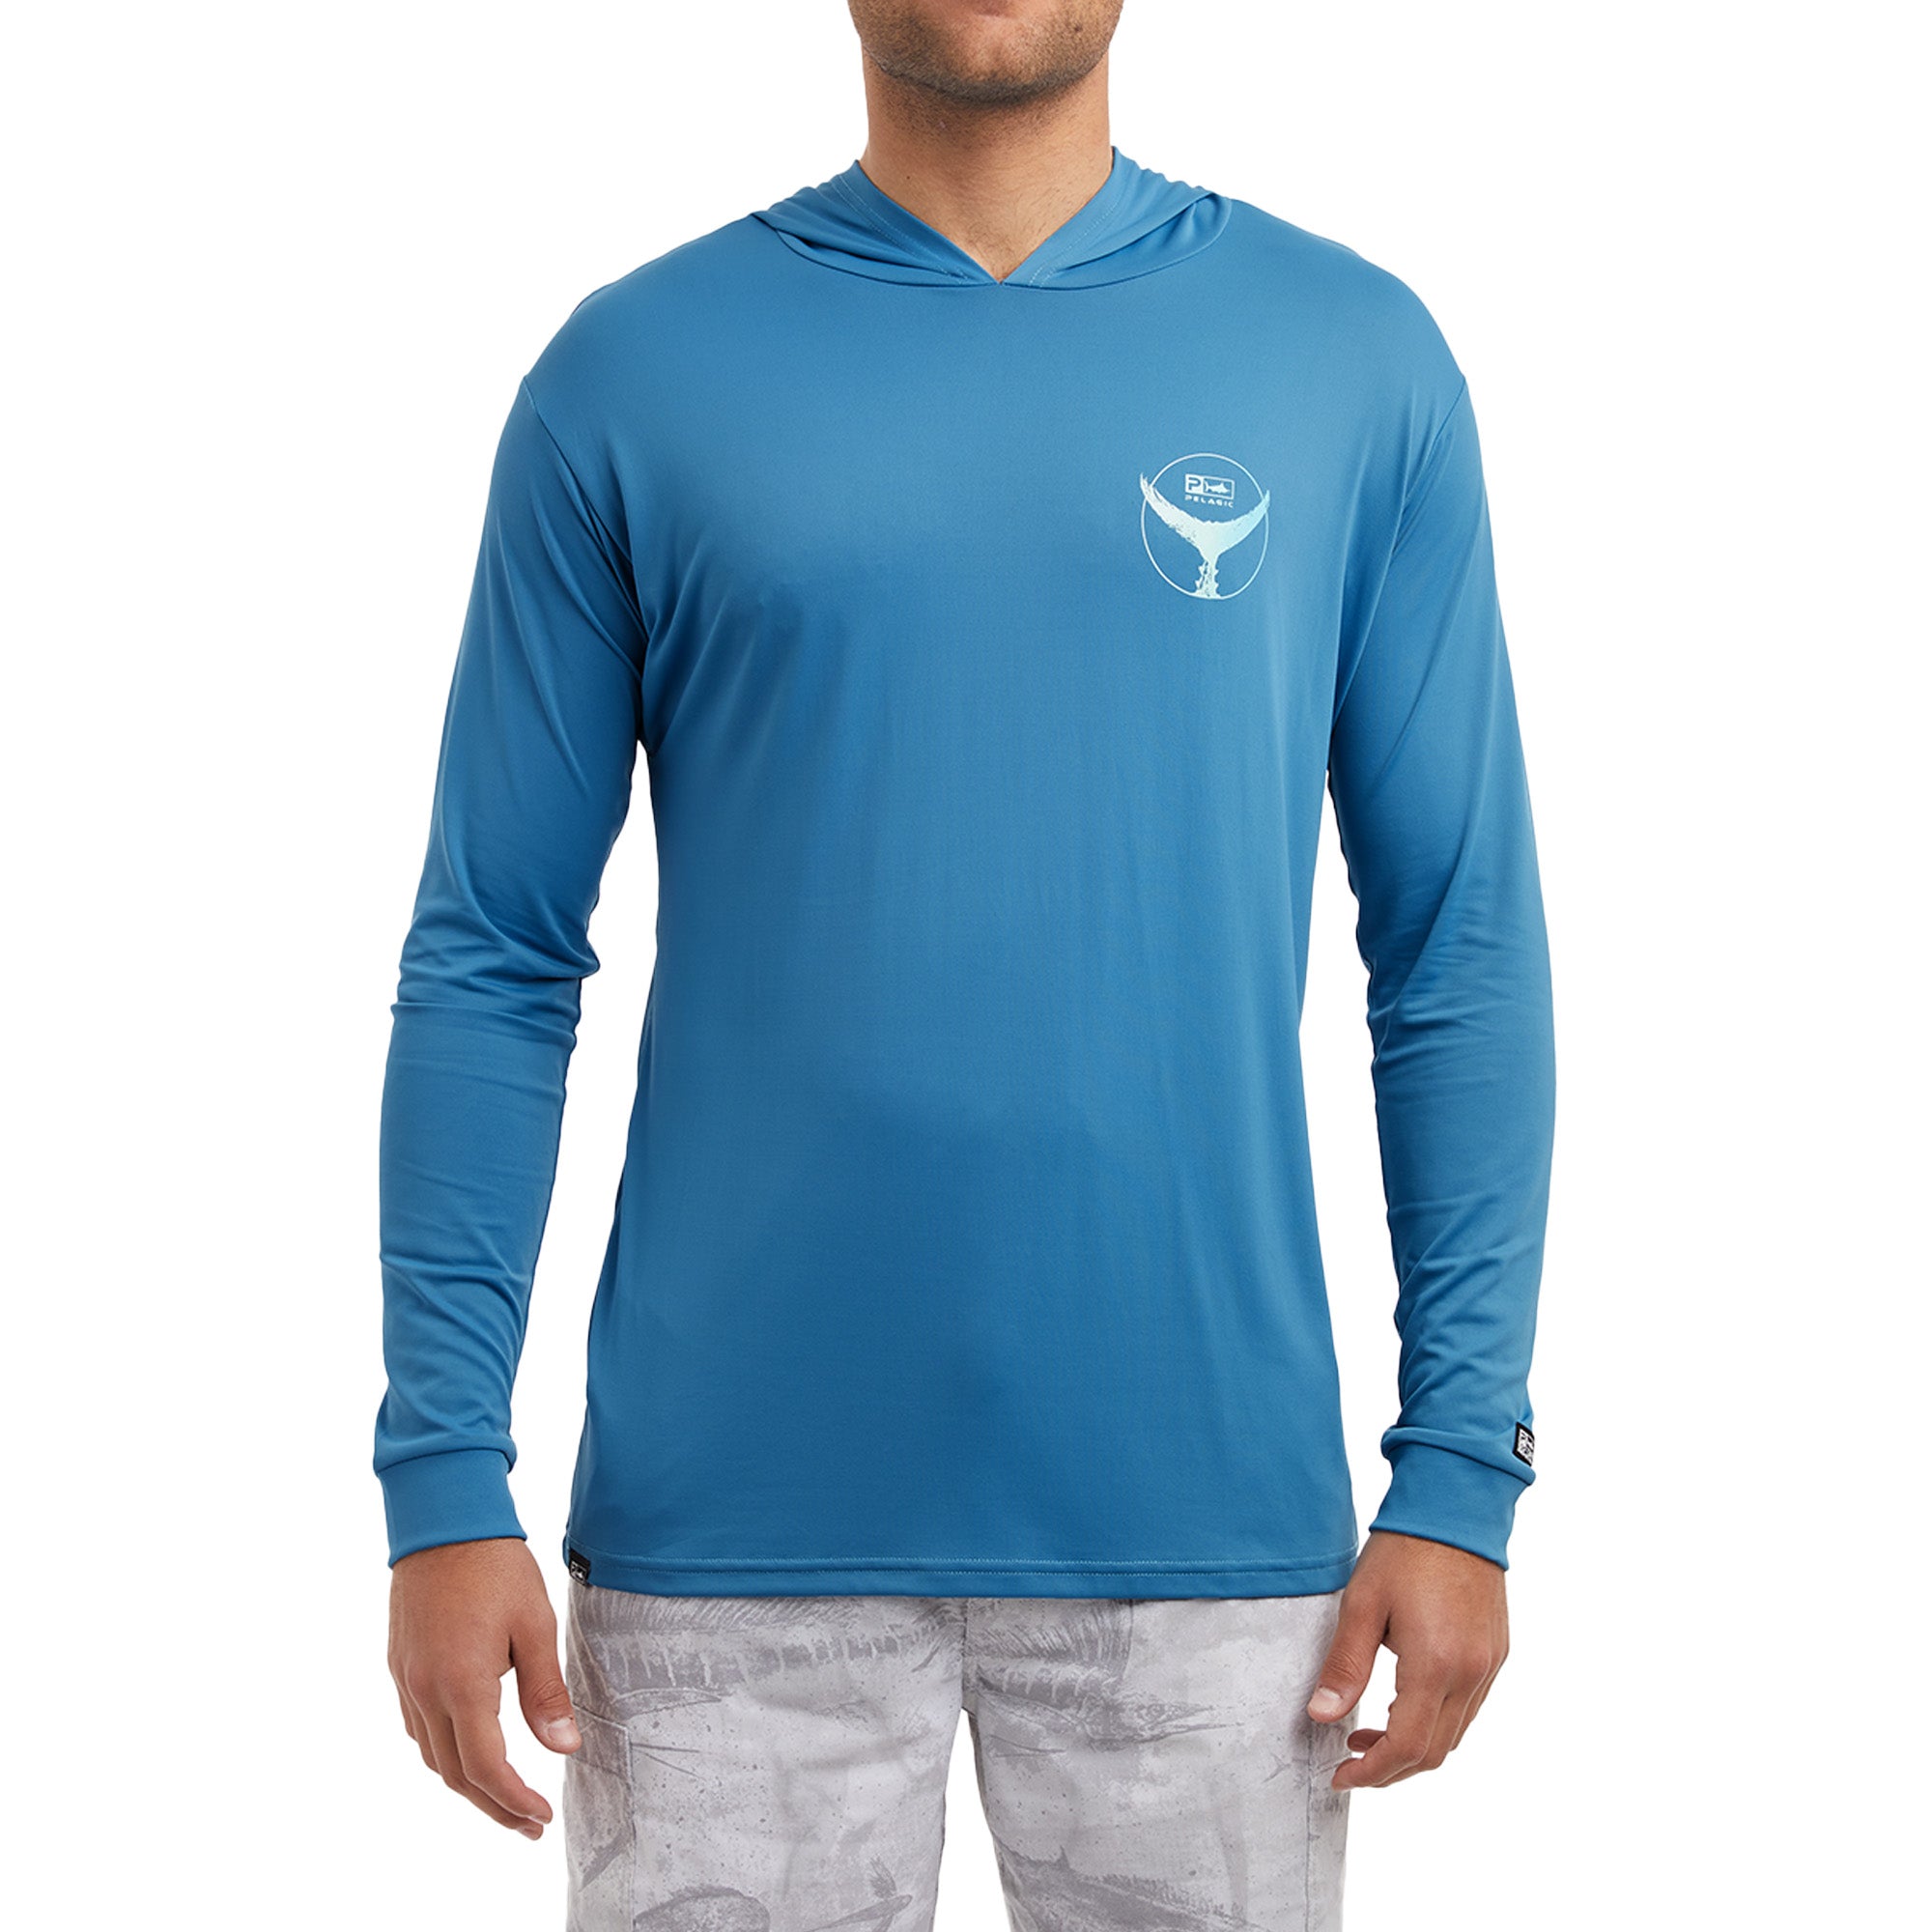 Under Armour® Men's S/S UA Coastal Teal Bass T-Shirt